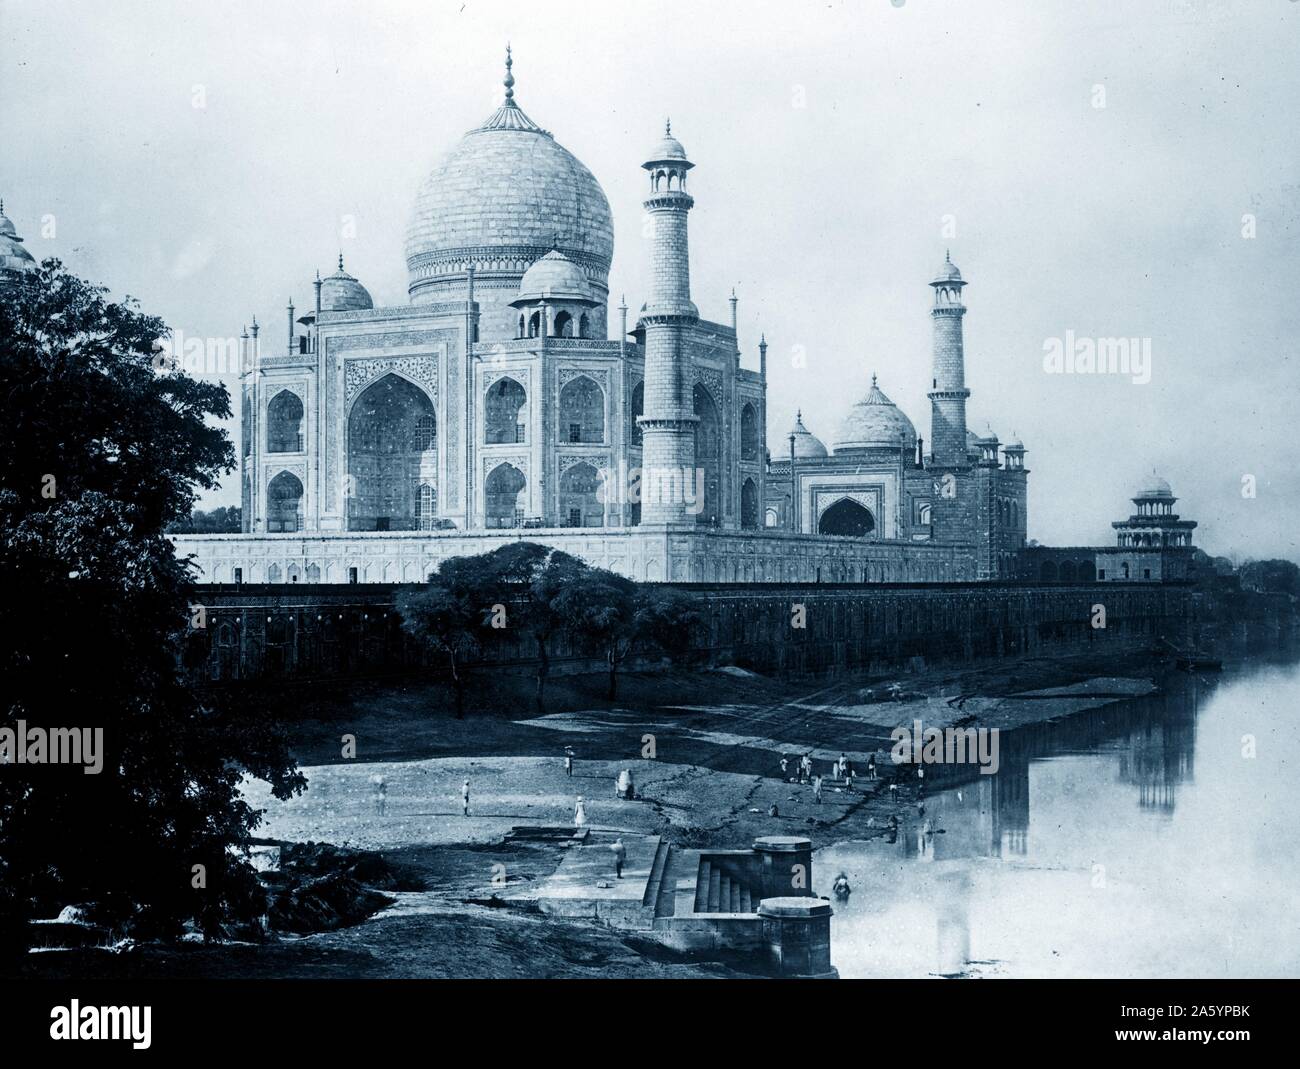 Photo du Taj Mahal, Agra, Inde. Datée 1910 Banque D'Images